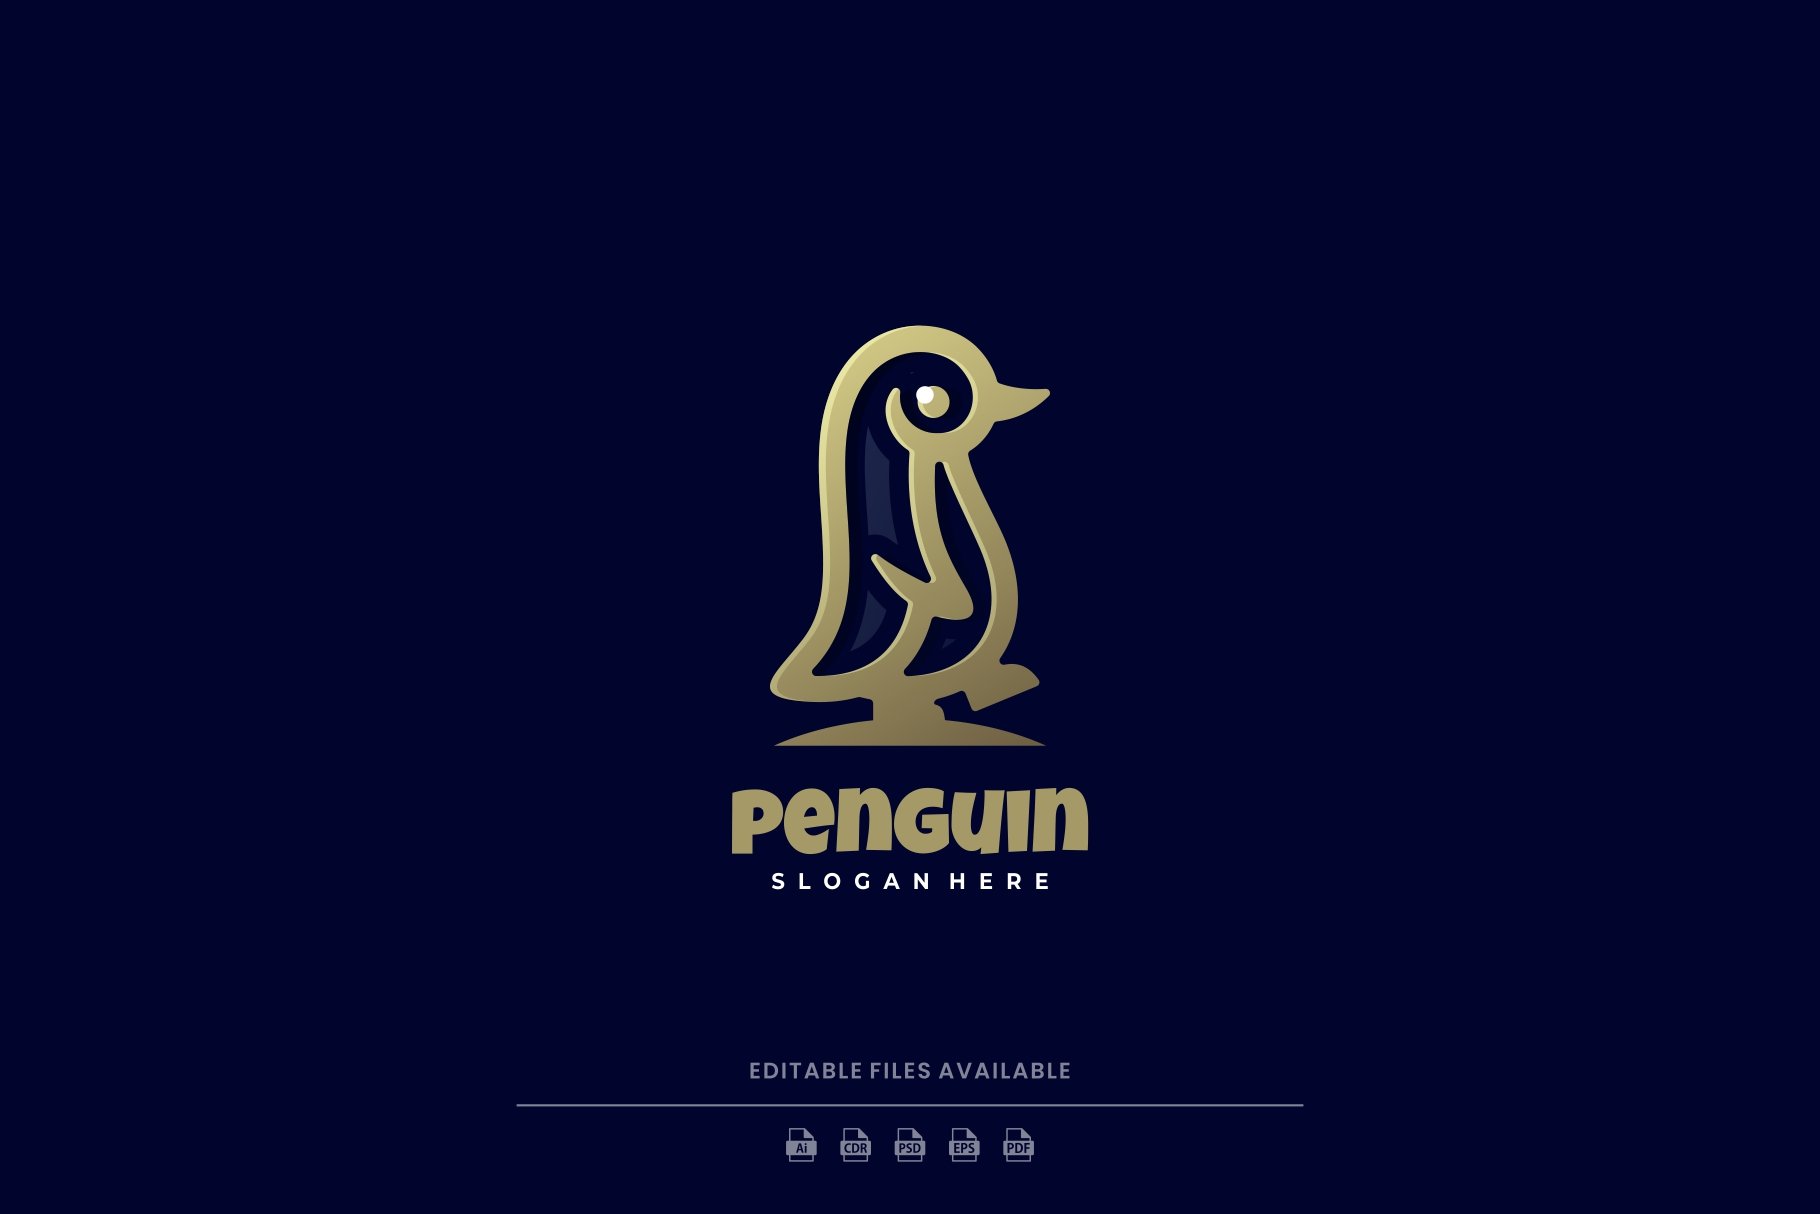 Penguin Line Art Logo cover image.